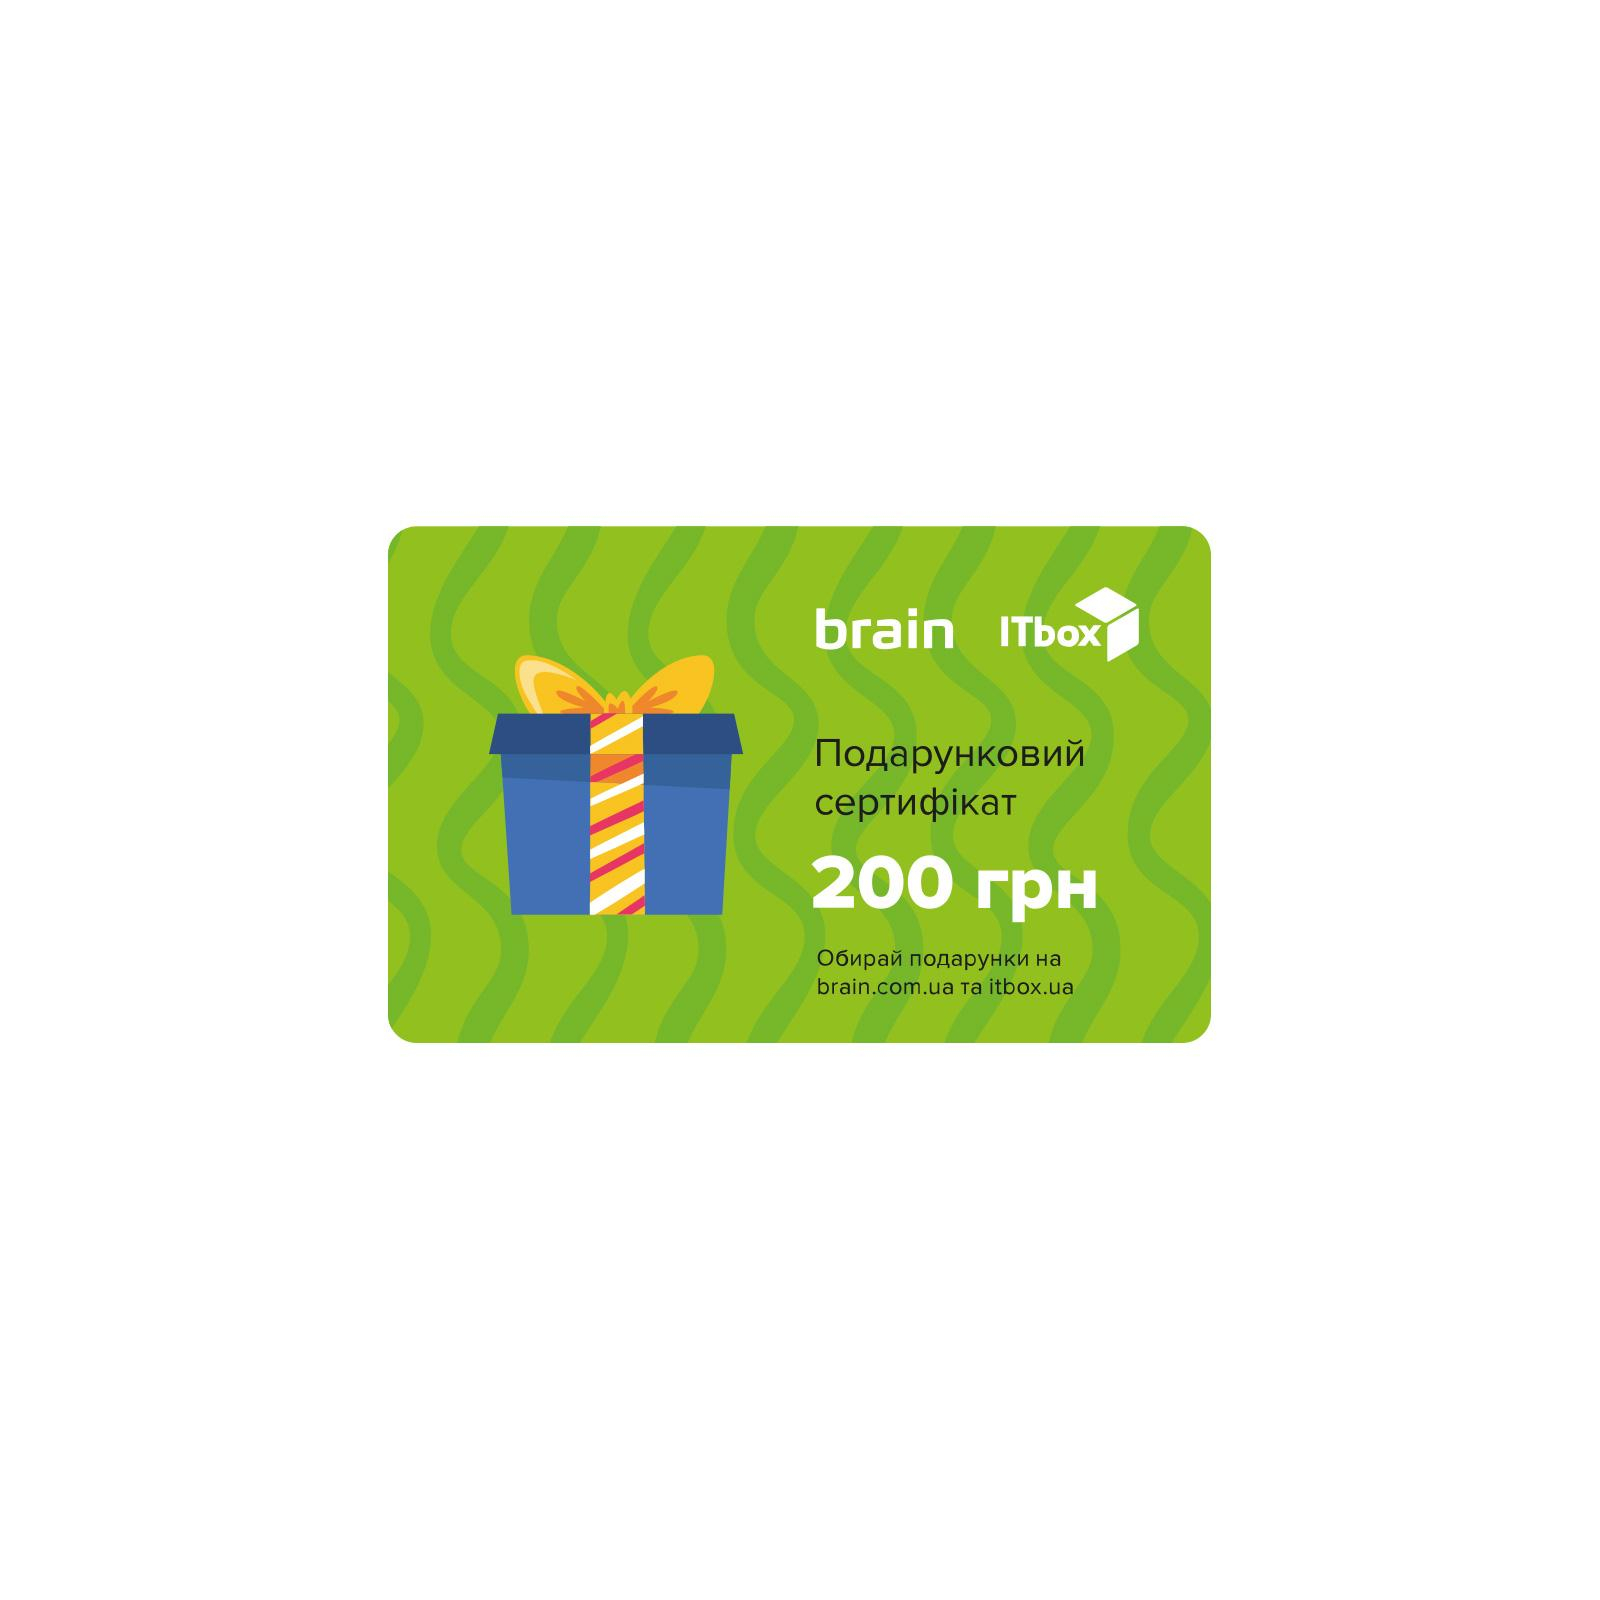 Подарунковий сертифікат на 200 грн Brain/ITbox